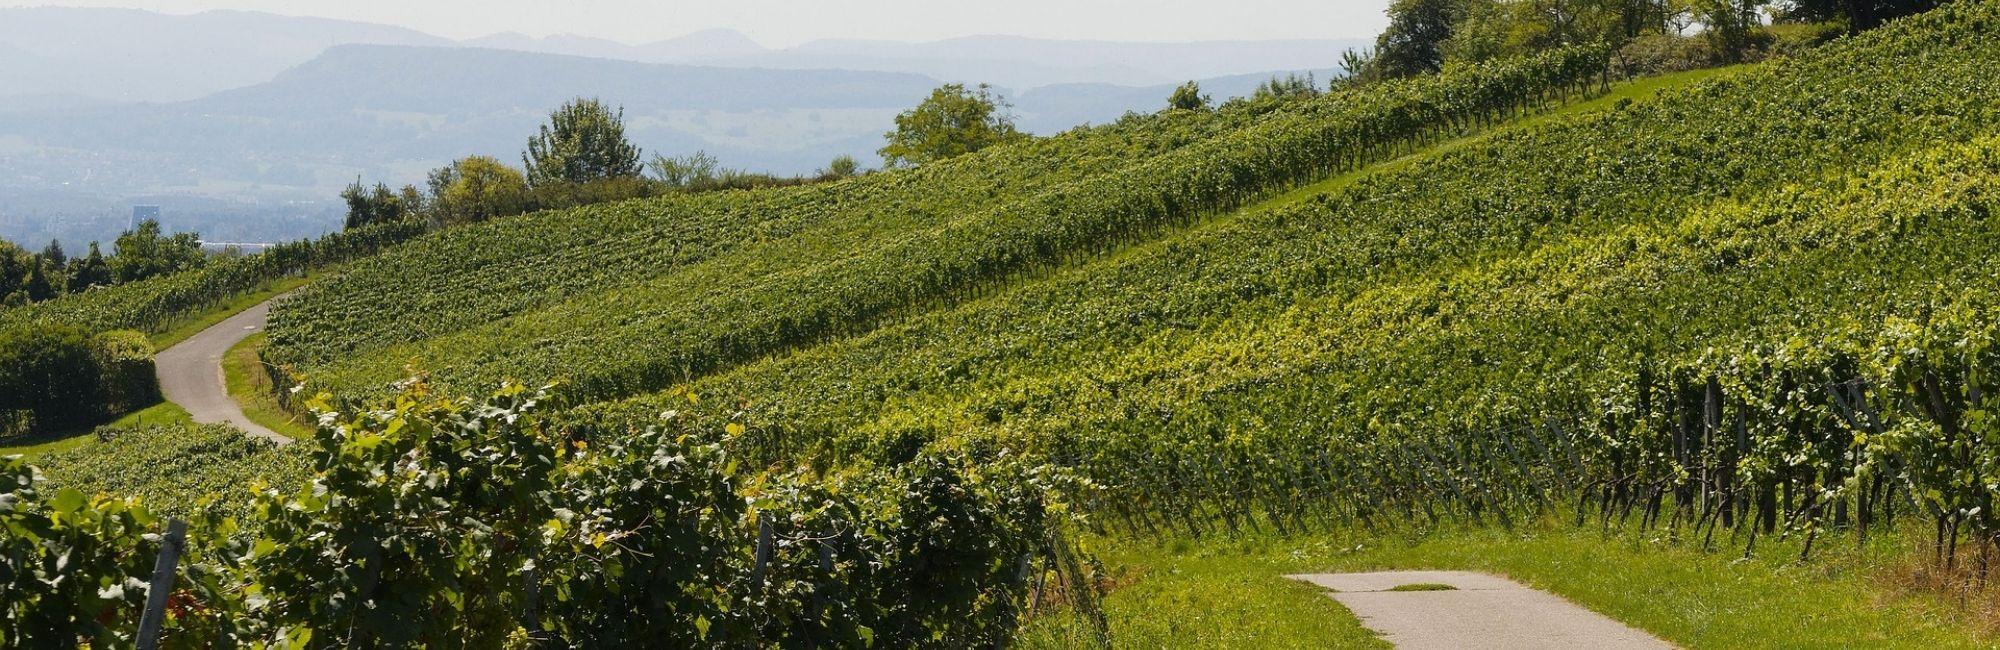 Burgundy vineyards Pixabay